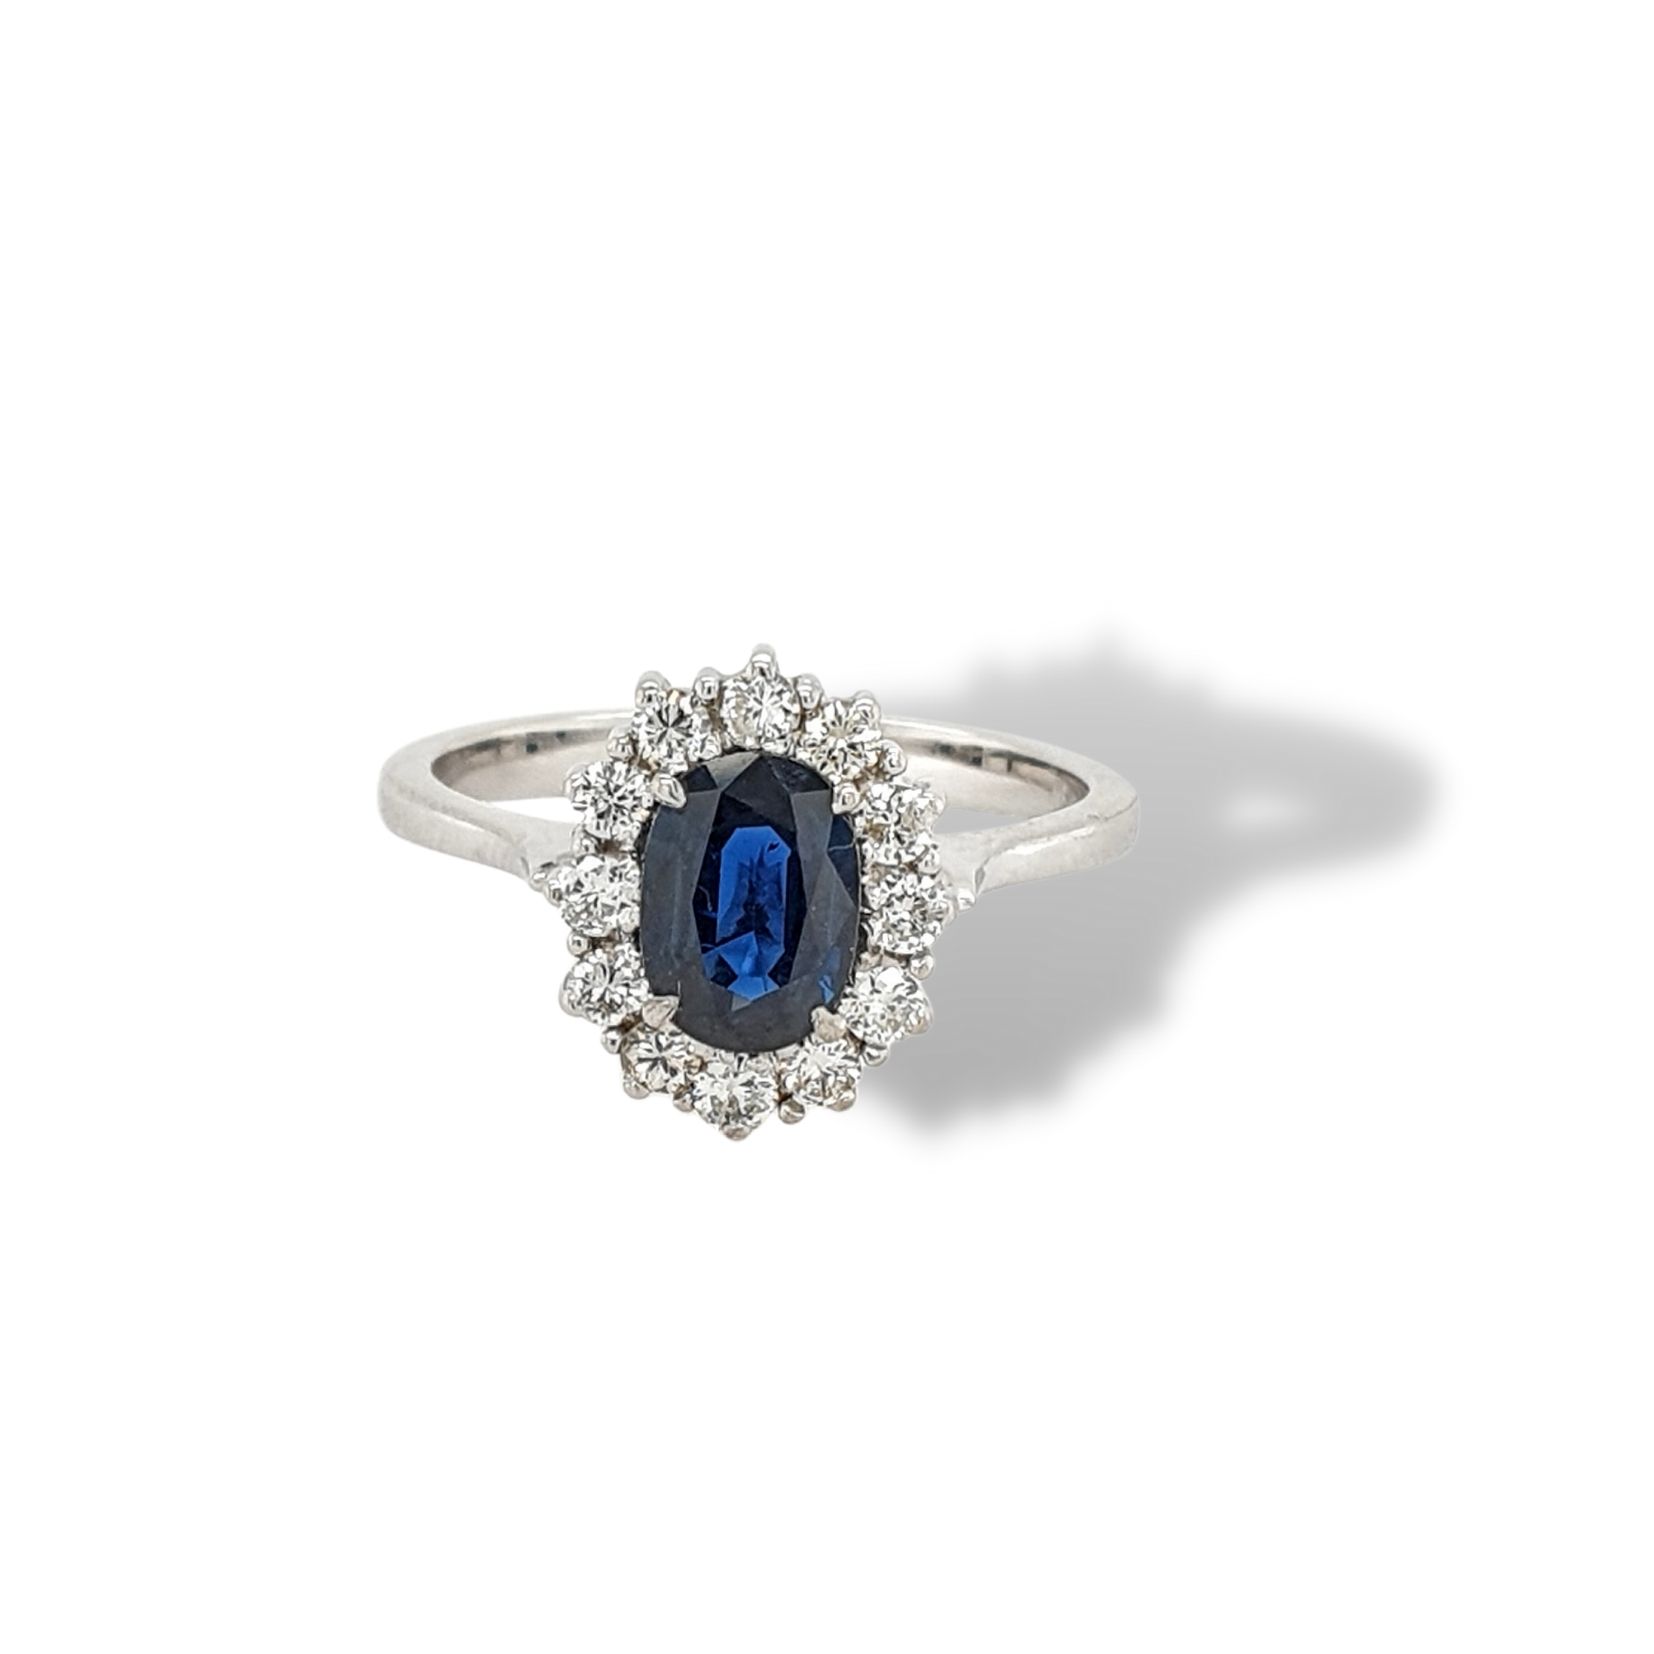 Klokje virtueel gek geworden 14 Karaat witgouden Lady Diana saffier diamant ring # 25710 |  Goudsmederij/Juwelier Arnold van Dodewaard